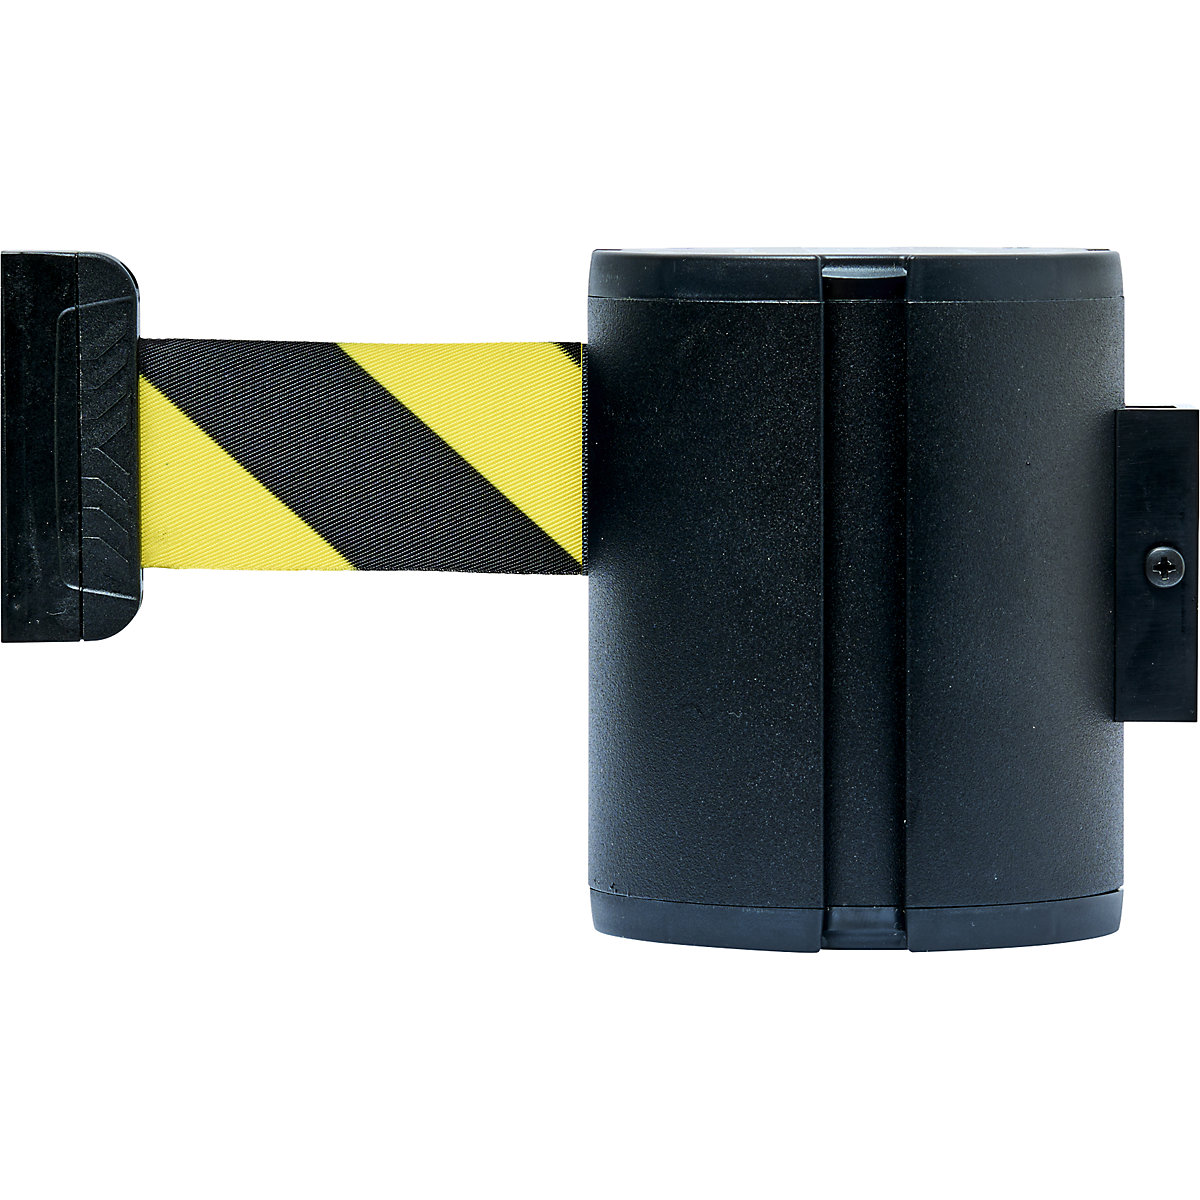 Gurtkassette aus Aluminium, Wall XL, Gurtfarbe Schwarz/Gelb, Gehäusefarbe Schwarz, magnetisch